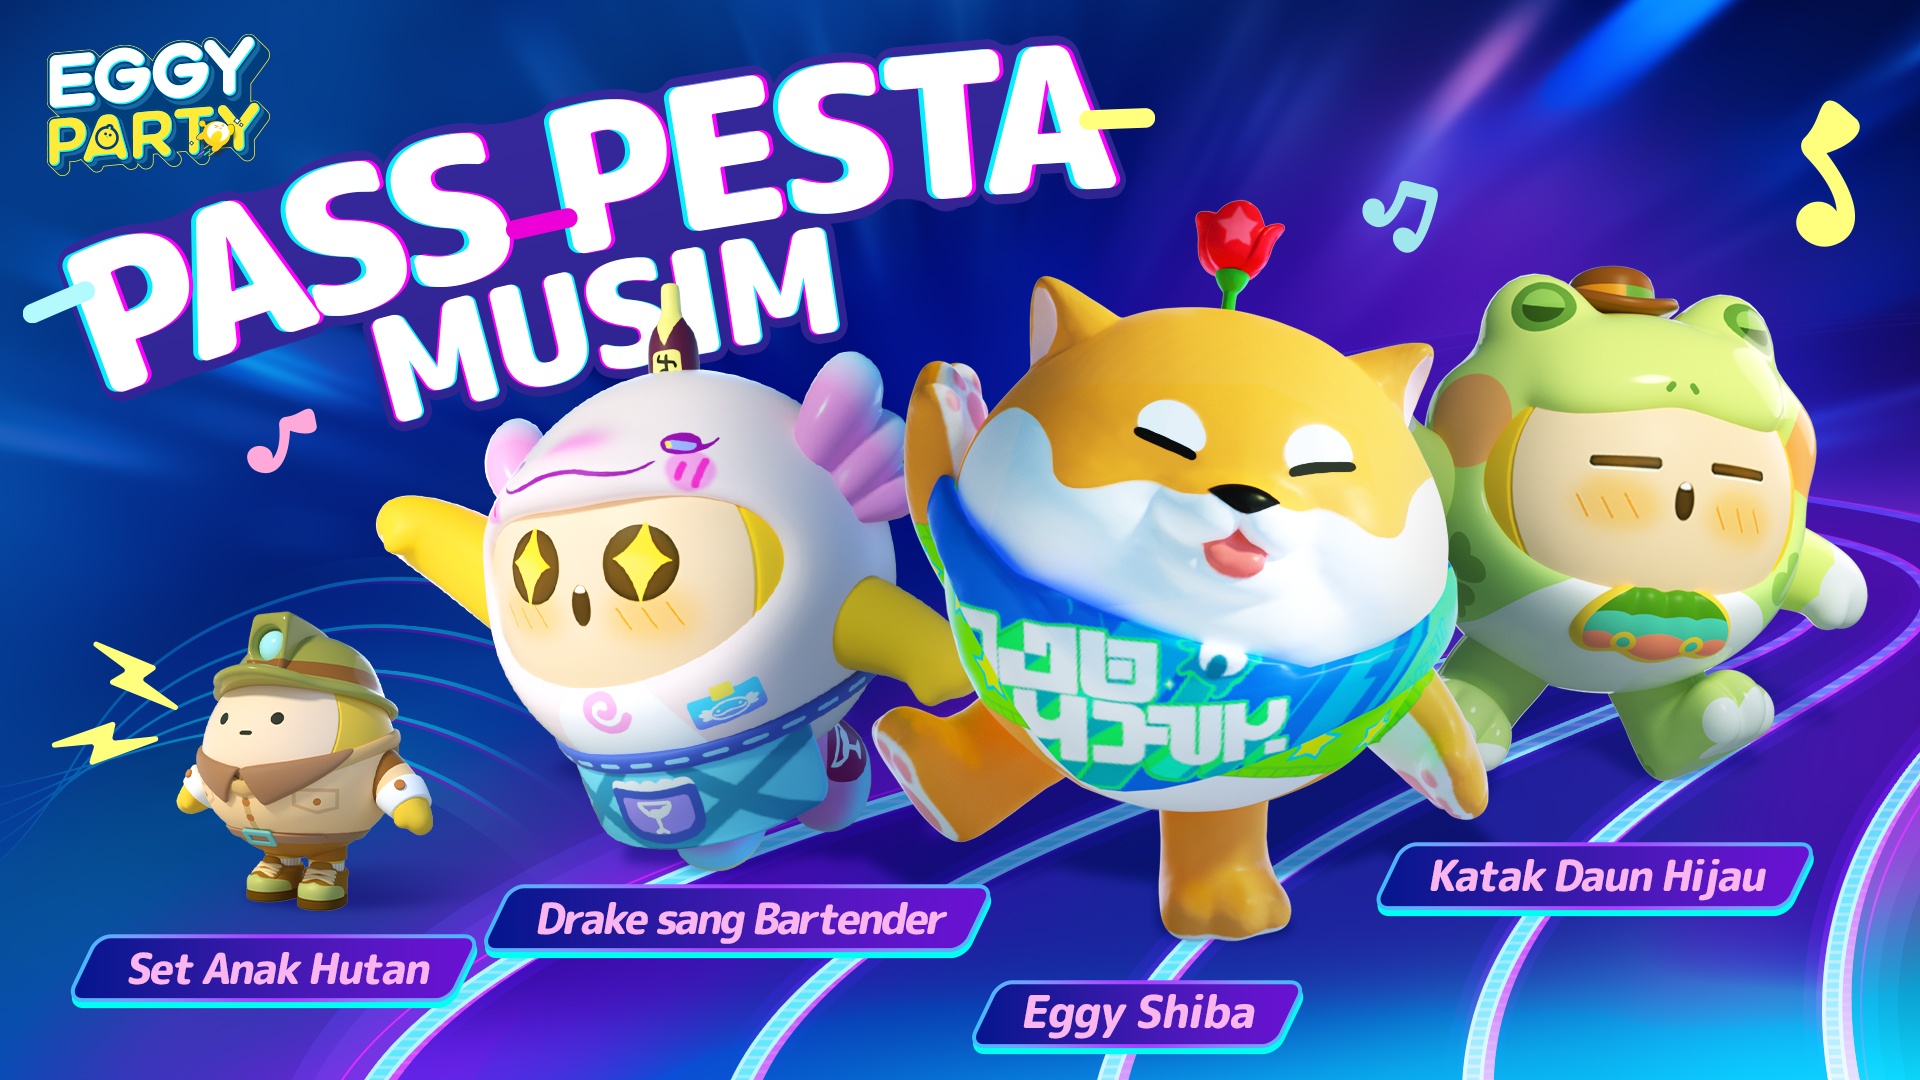 Eggy Party, Game Multiplayer Kompetitif Dari NetEase Telah Hadir Di Wilayah Asia Tenggara